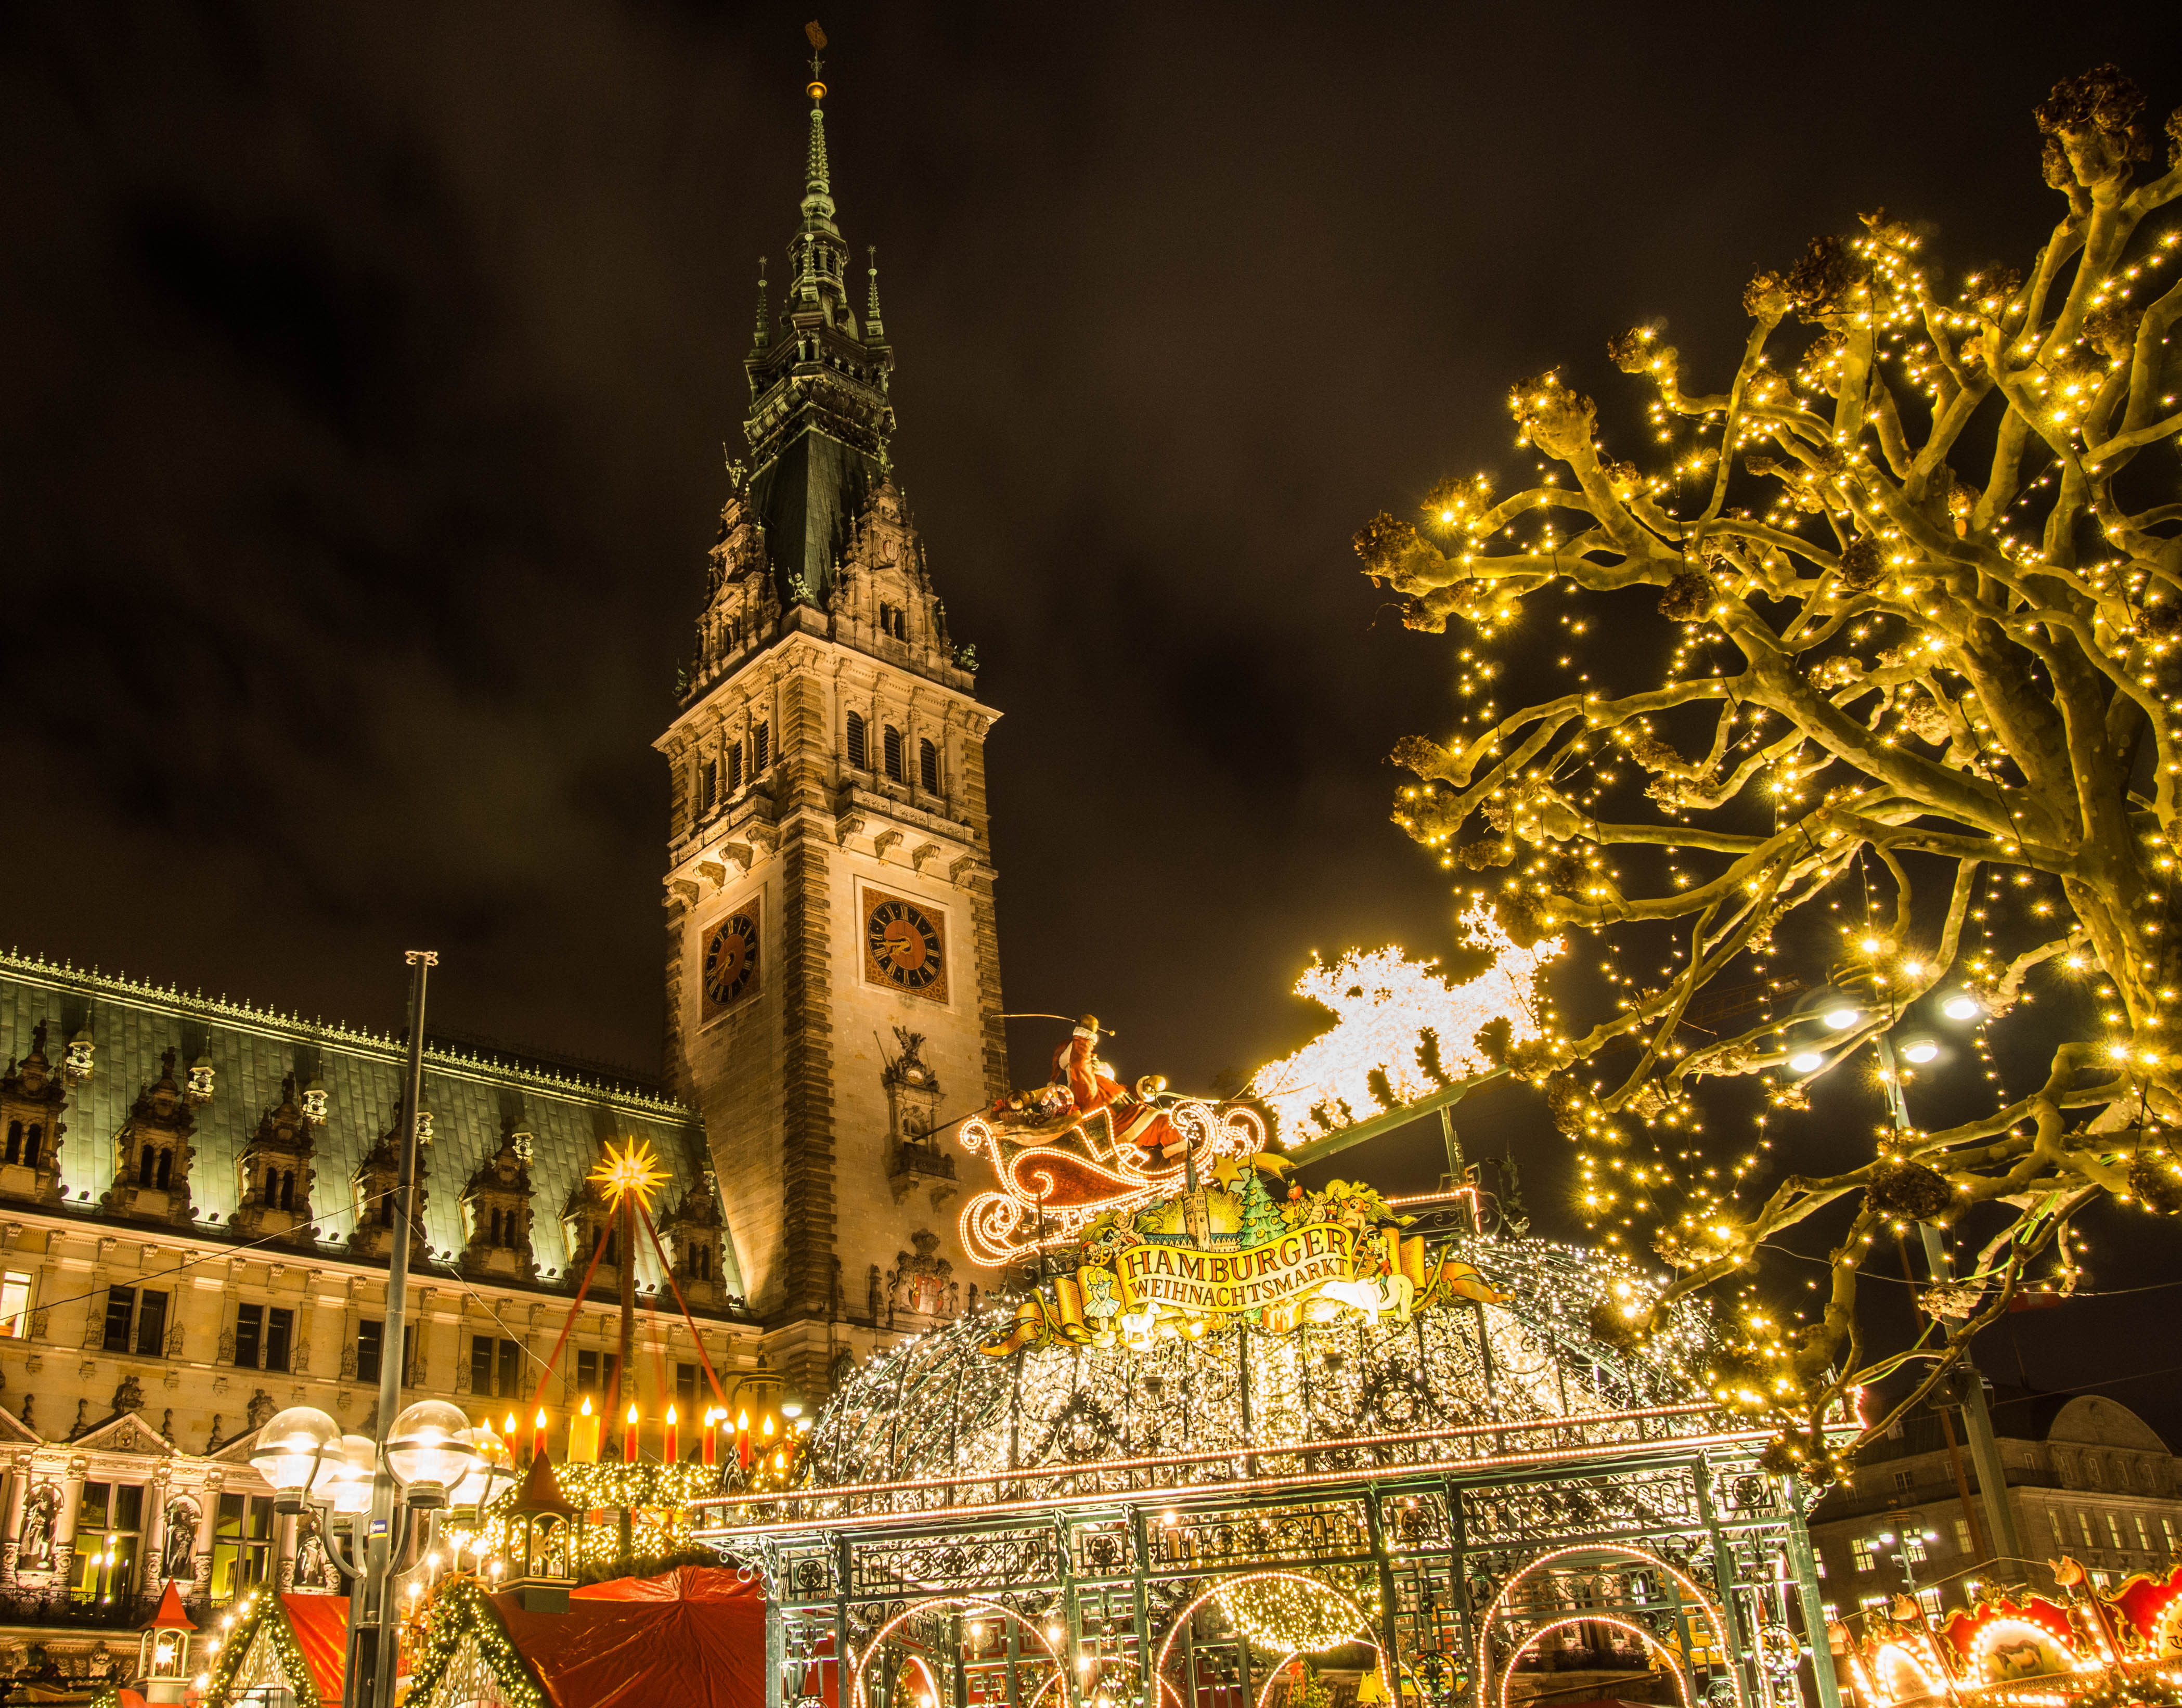 View of the Hamburg Christmas market at night